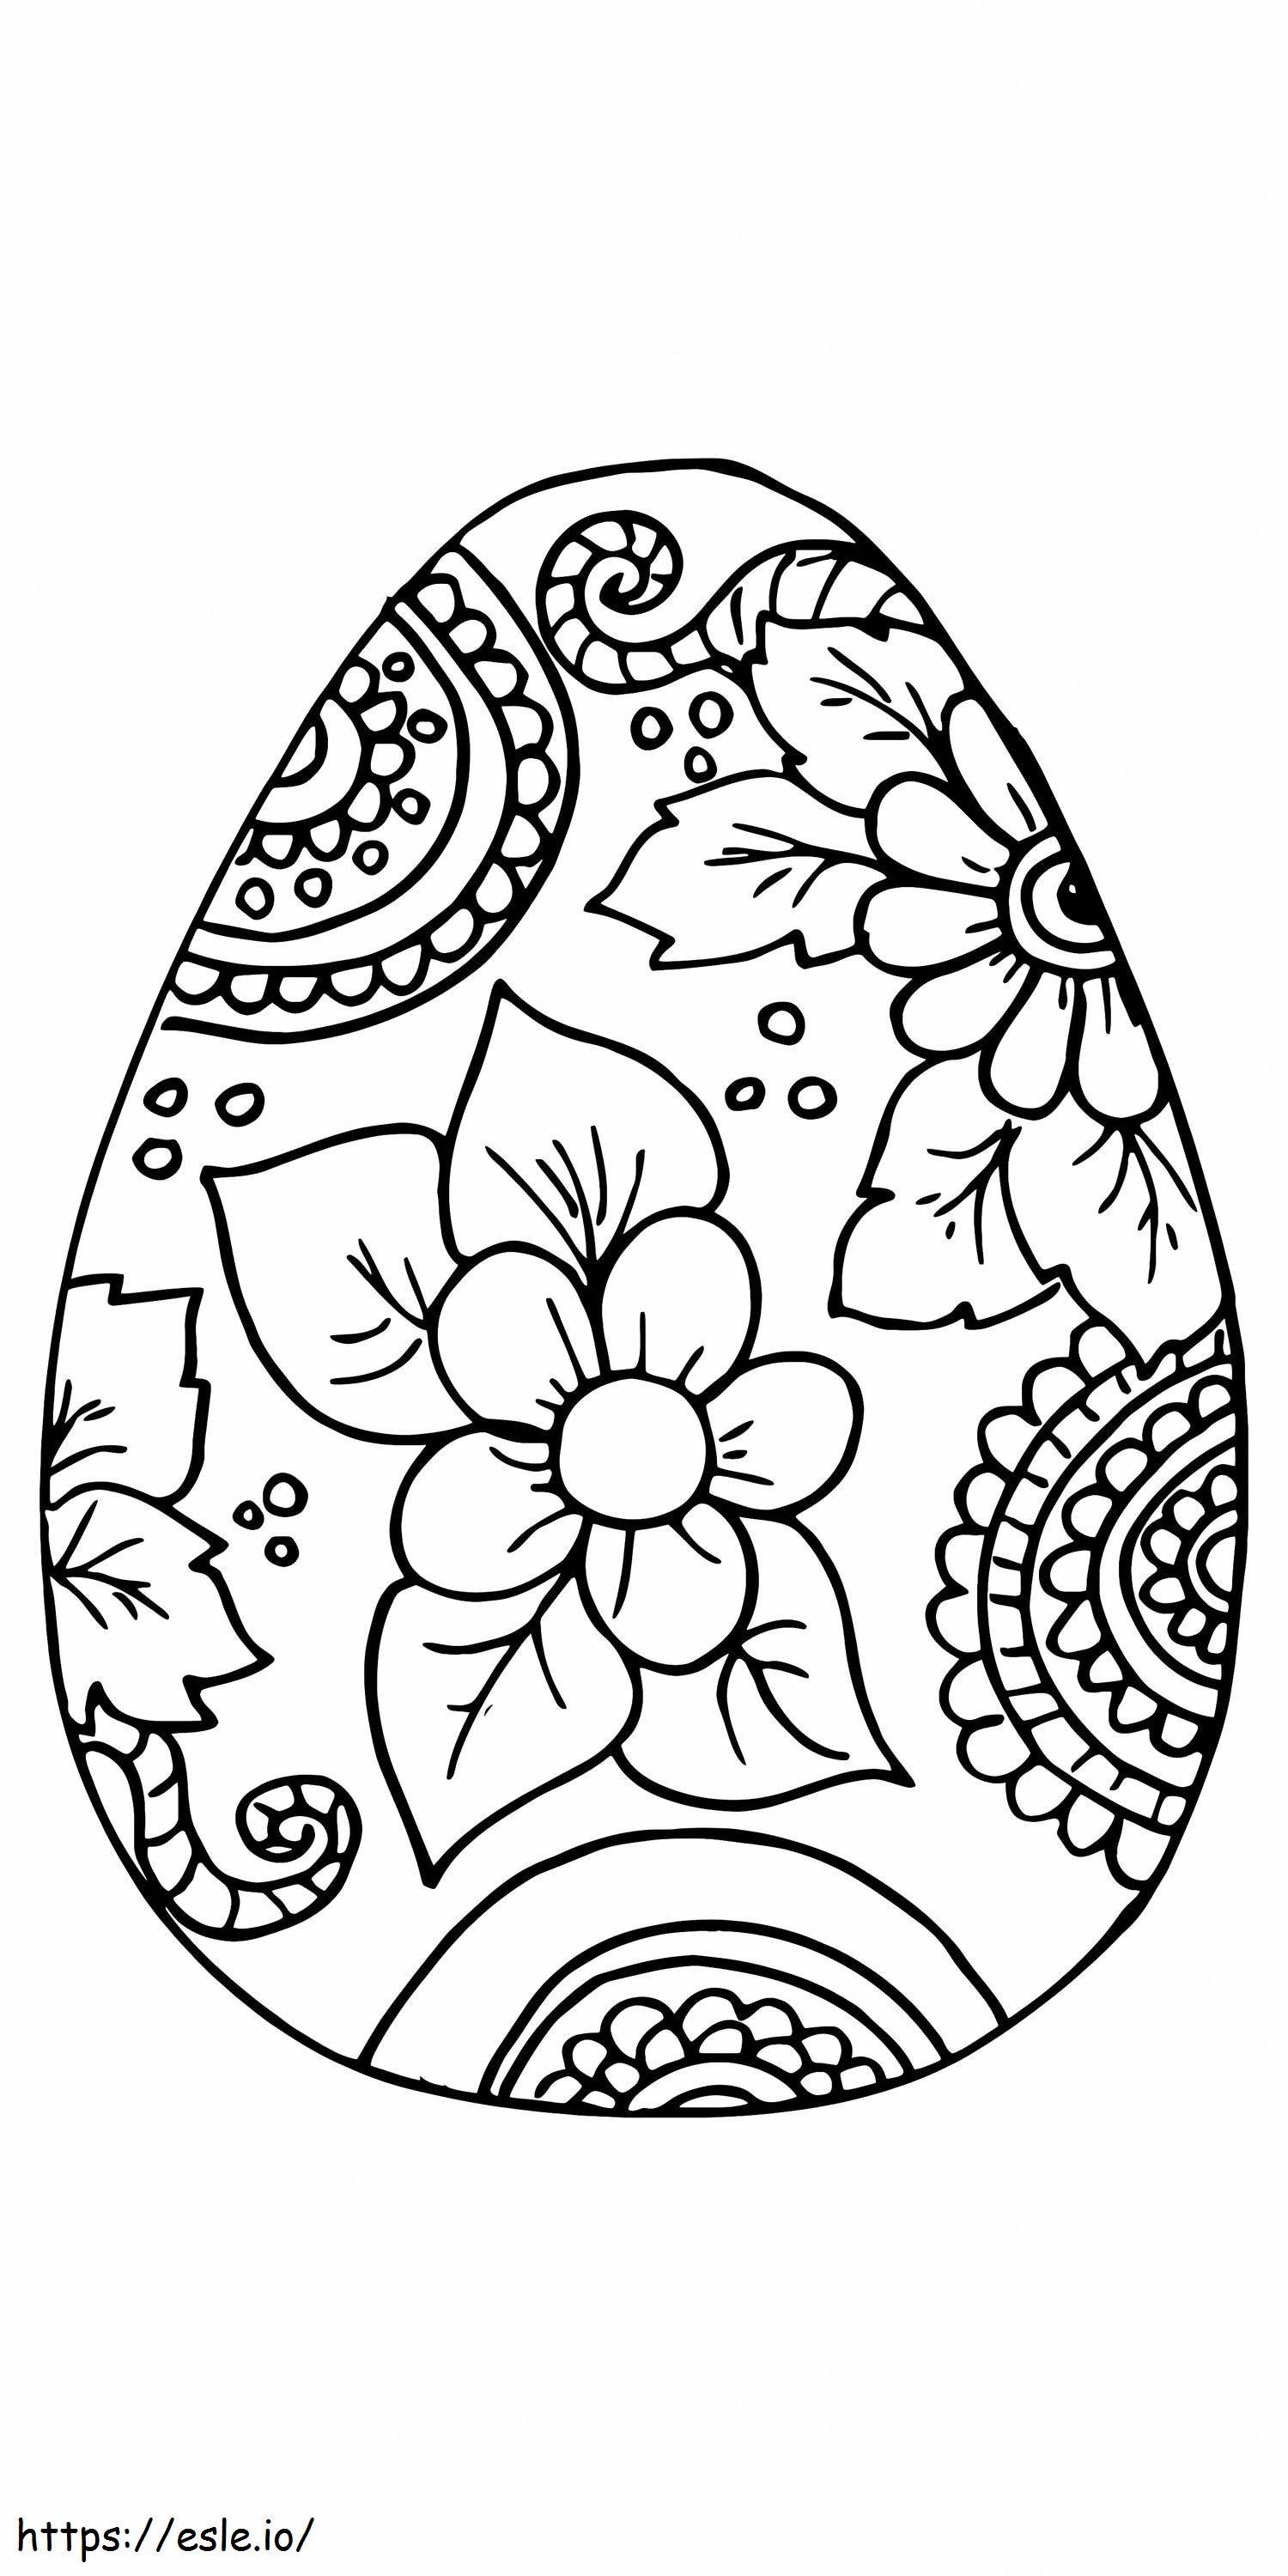 Osterei-Blumenmuster zum Ausdrucken 2 ausmalbilder